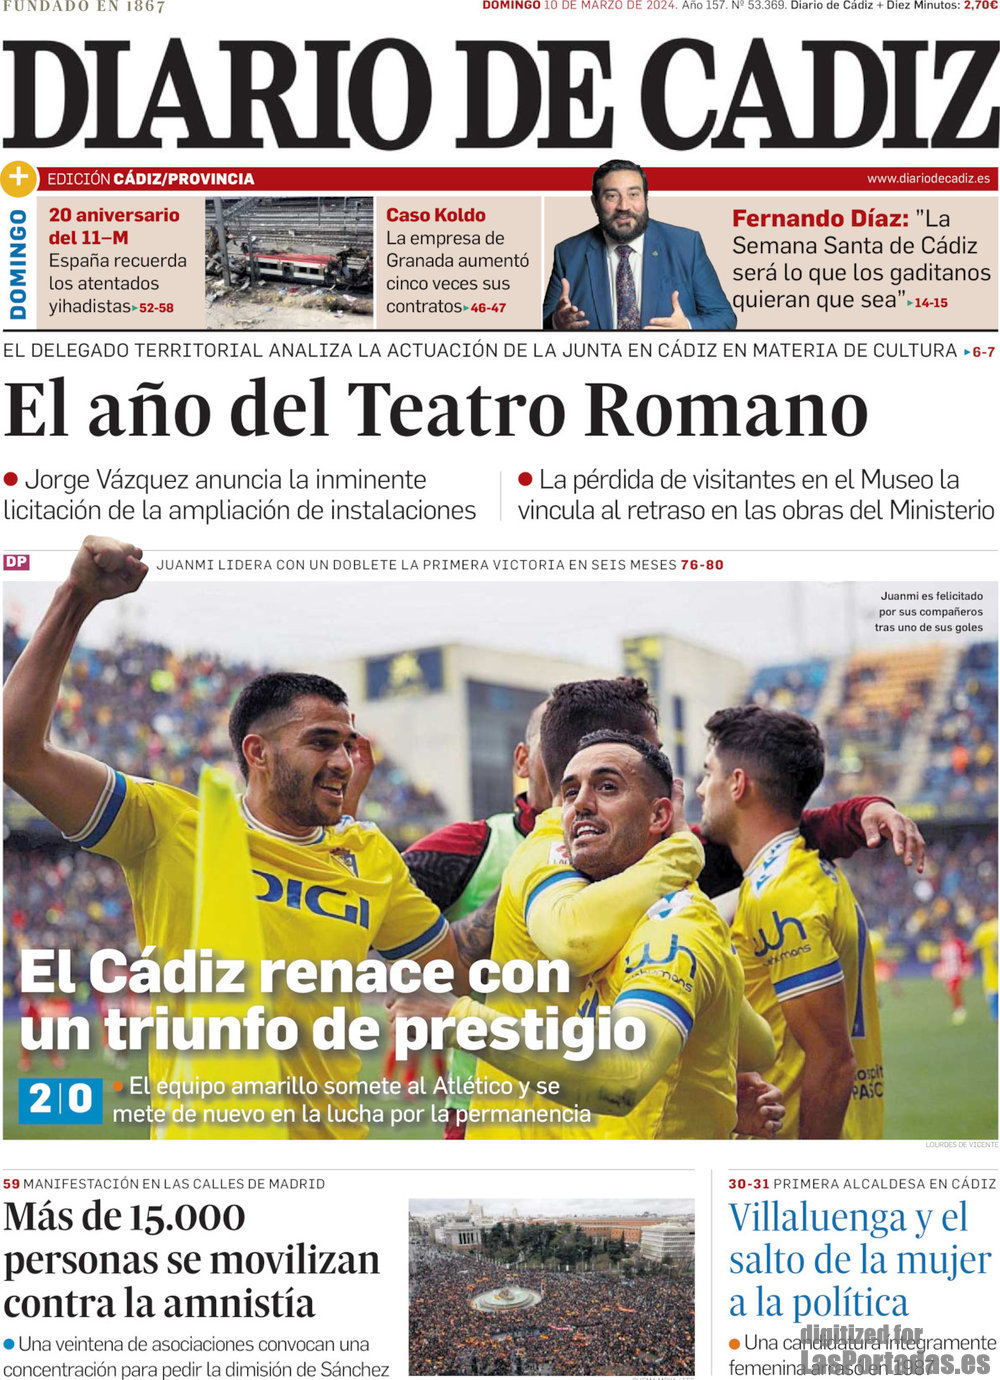 Diario de Cádiz